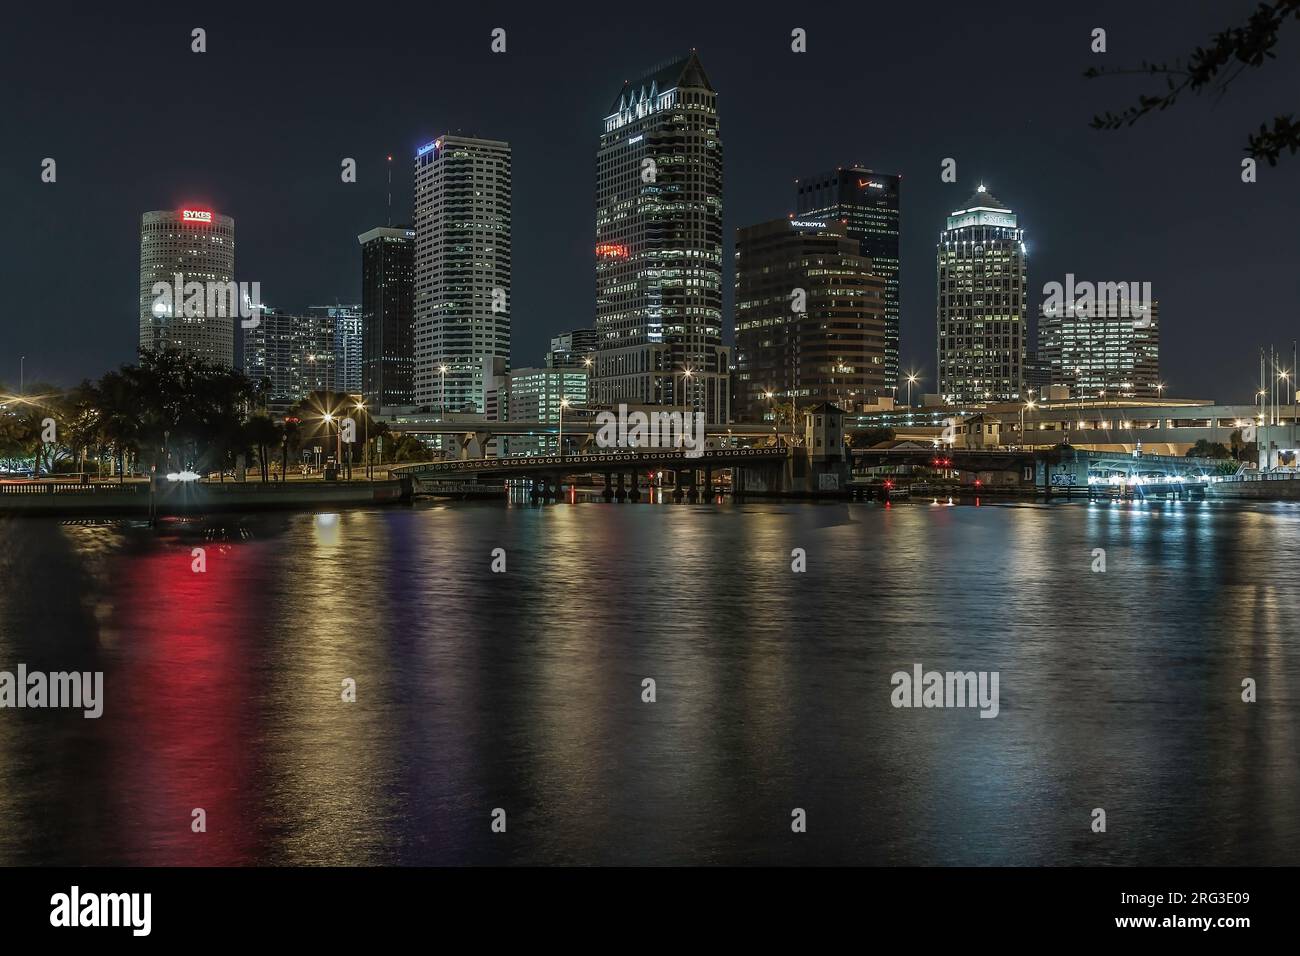 Tampa Night-time Skyline. Stock Photo